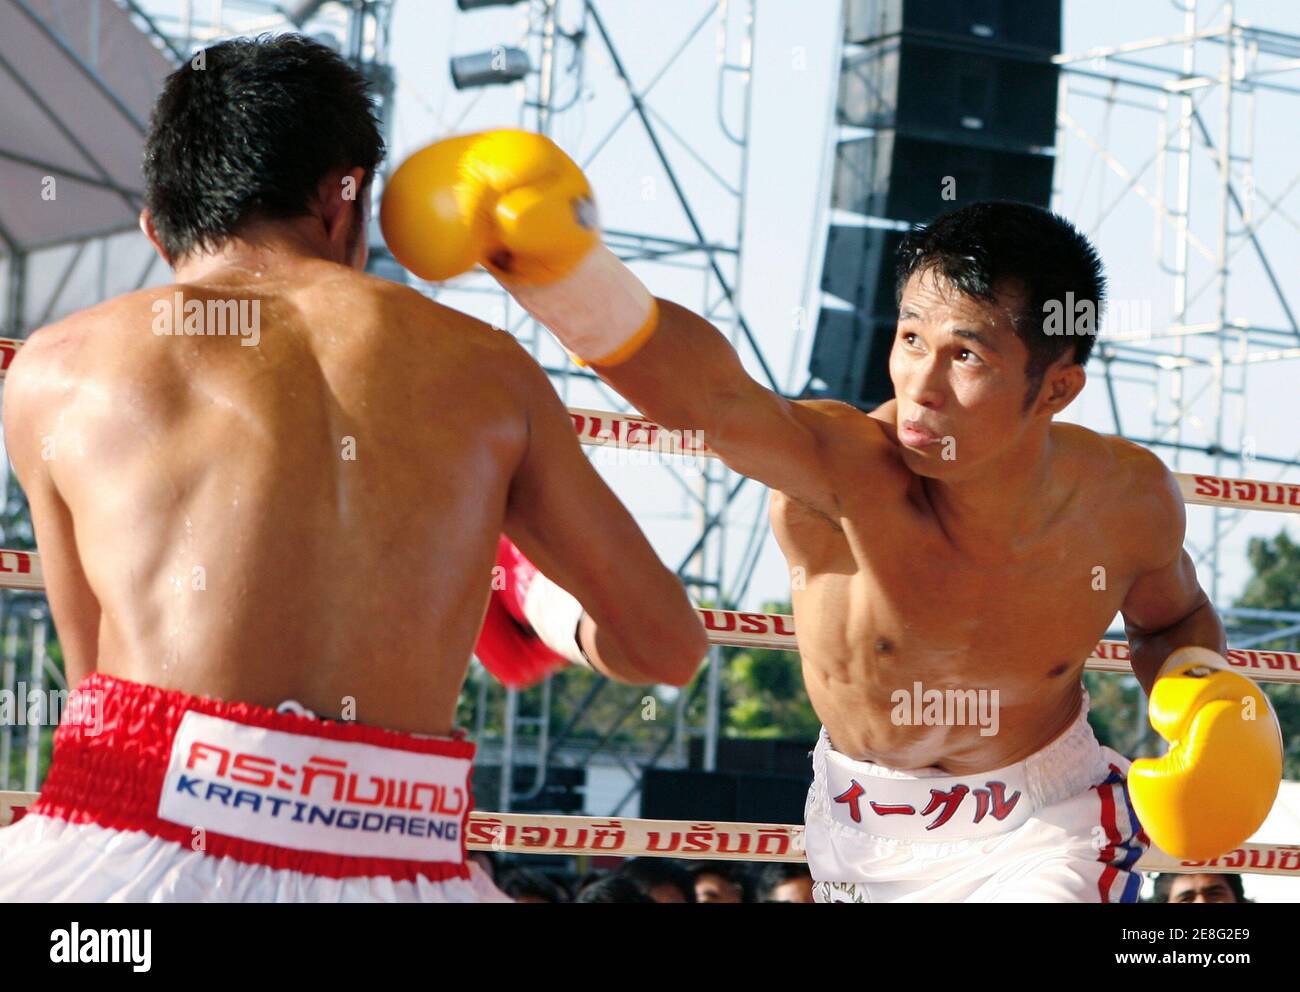 Eagle Kyowa, campione di peso delle fragole di WBC, ha messo un pugno sul volto dello sfidante tailandese Oledong Sithsanerchai durante il suo titolo di peso delle fragole di WBC a Bangkok il 29 novembre 2007. Oledong ha vinto la partita. REUTERS/Chaiwat Subprasom (THAILANDIA) Foto Stock